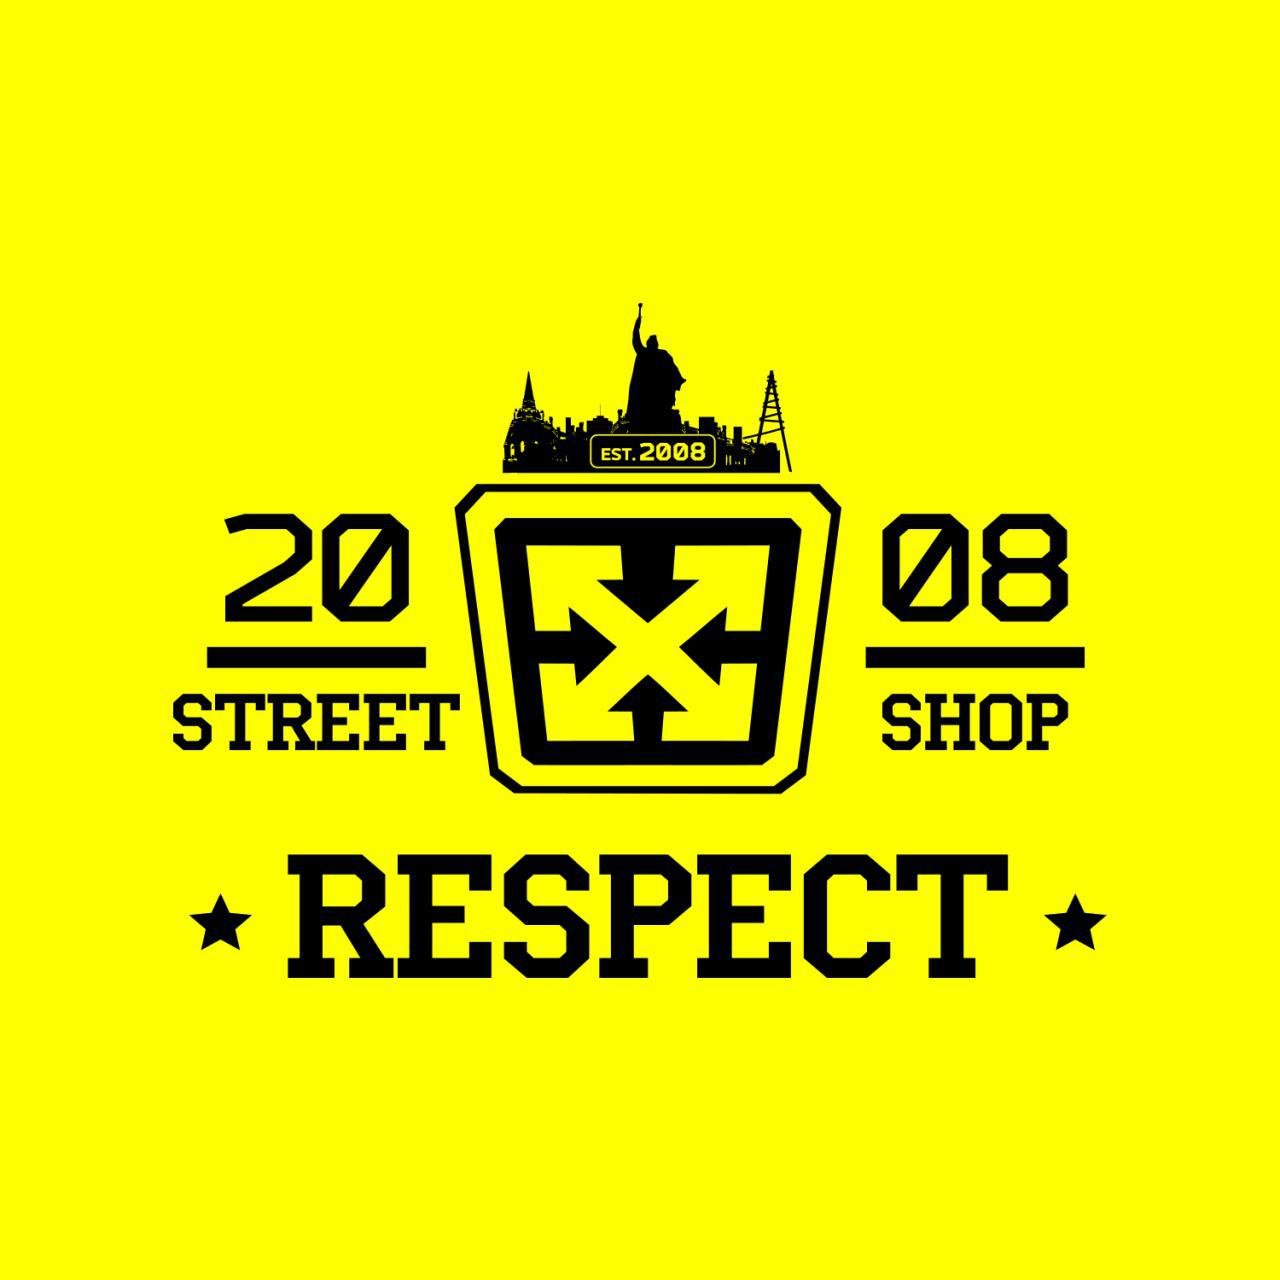 Respect Shop